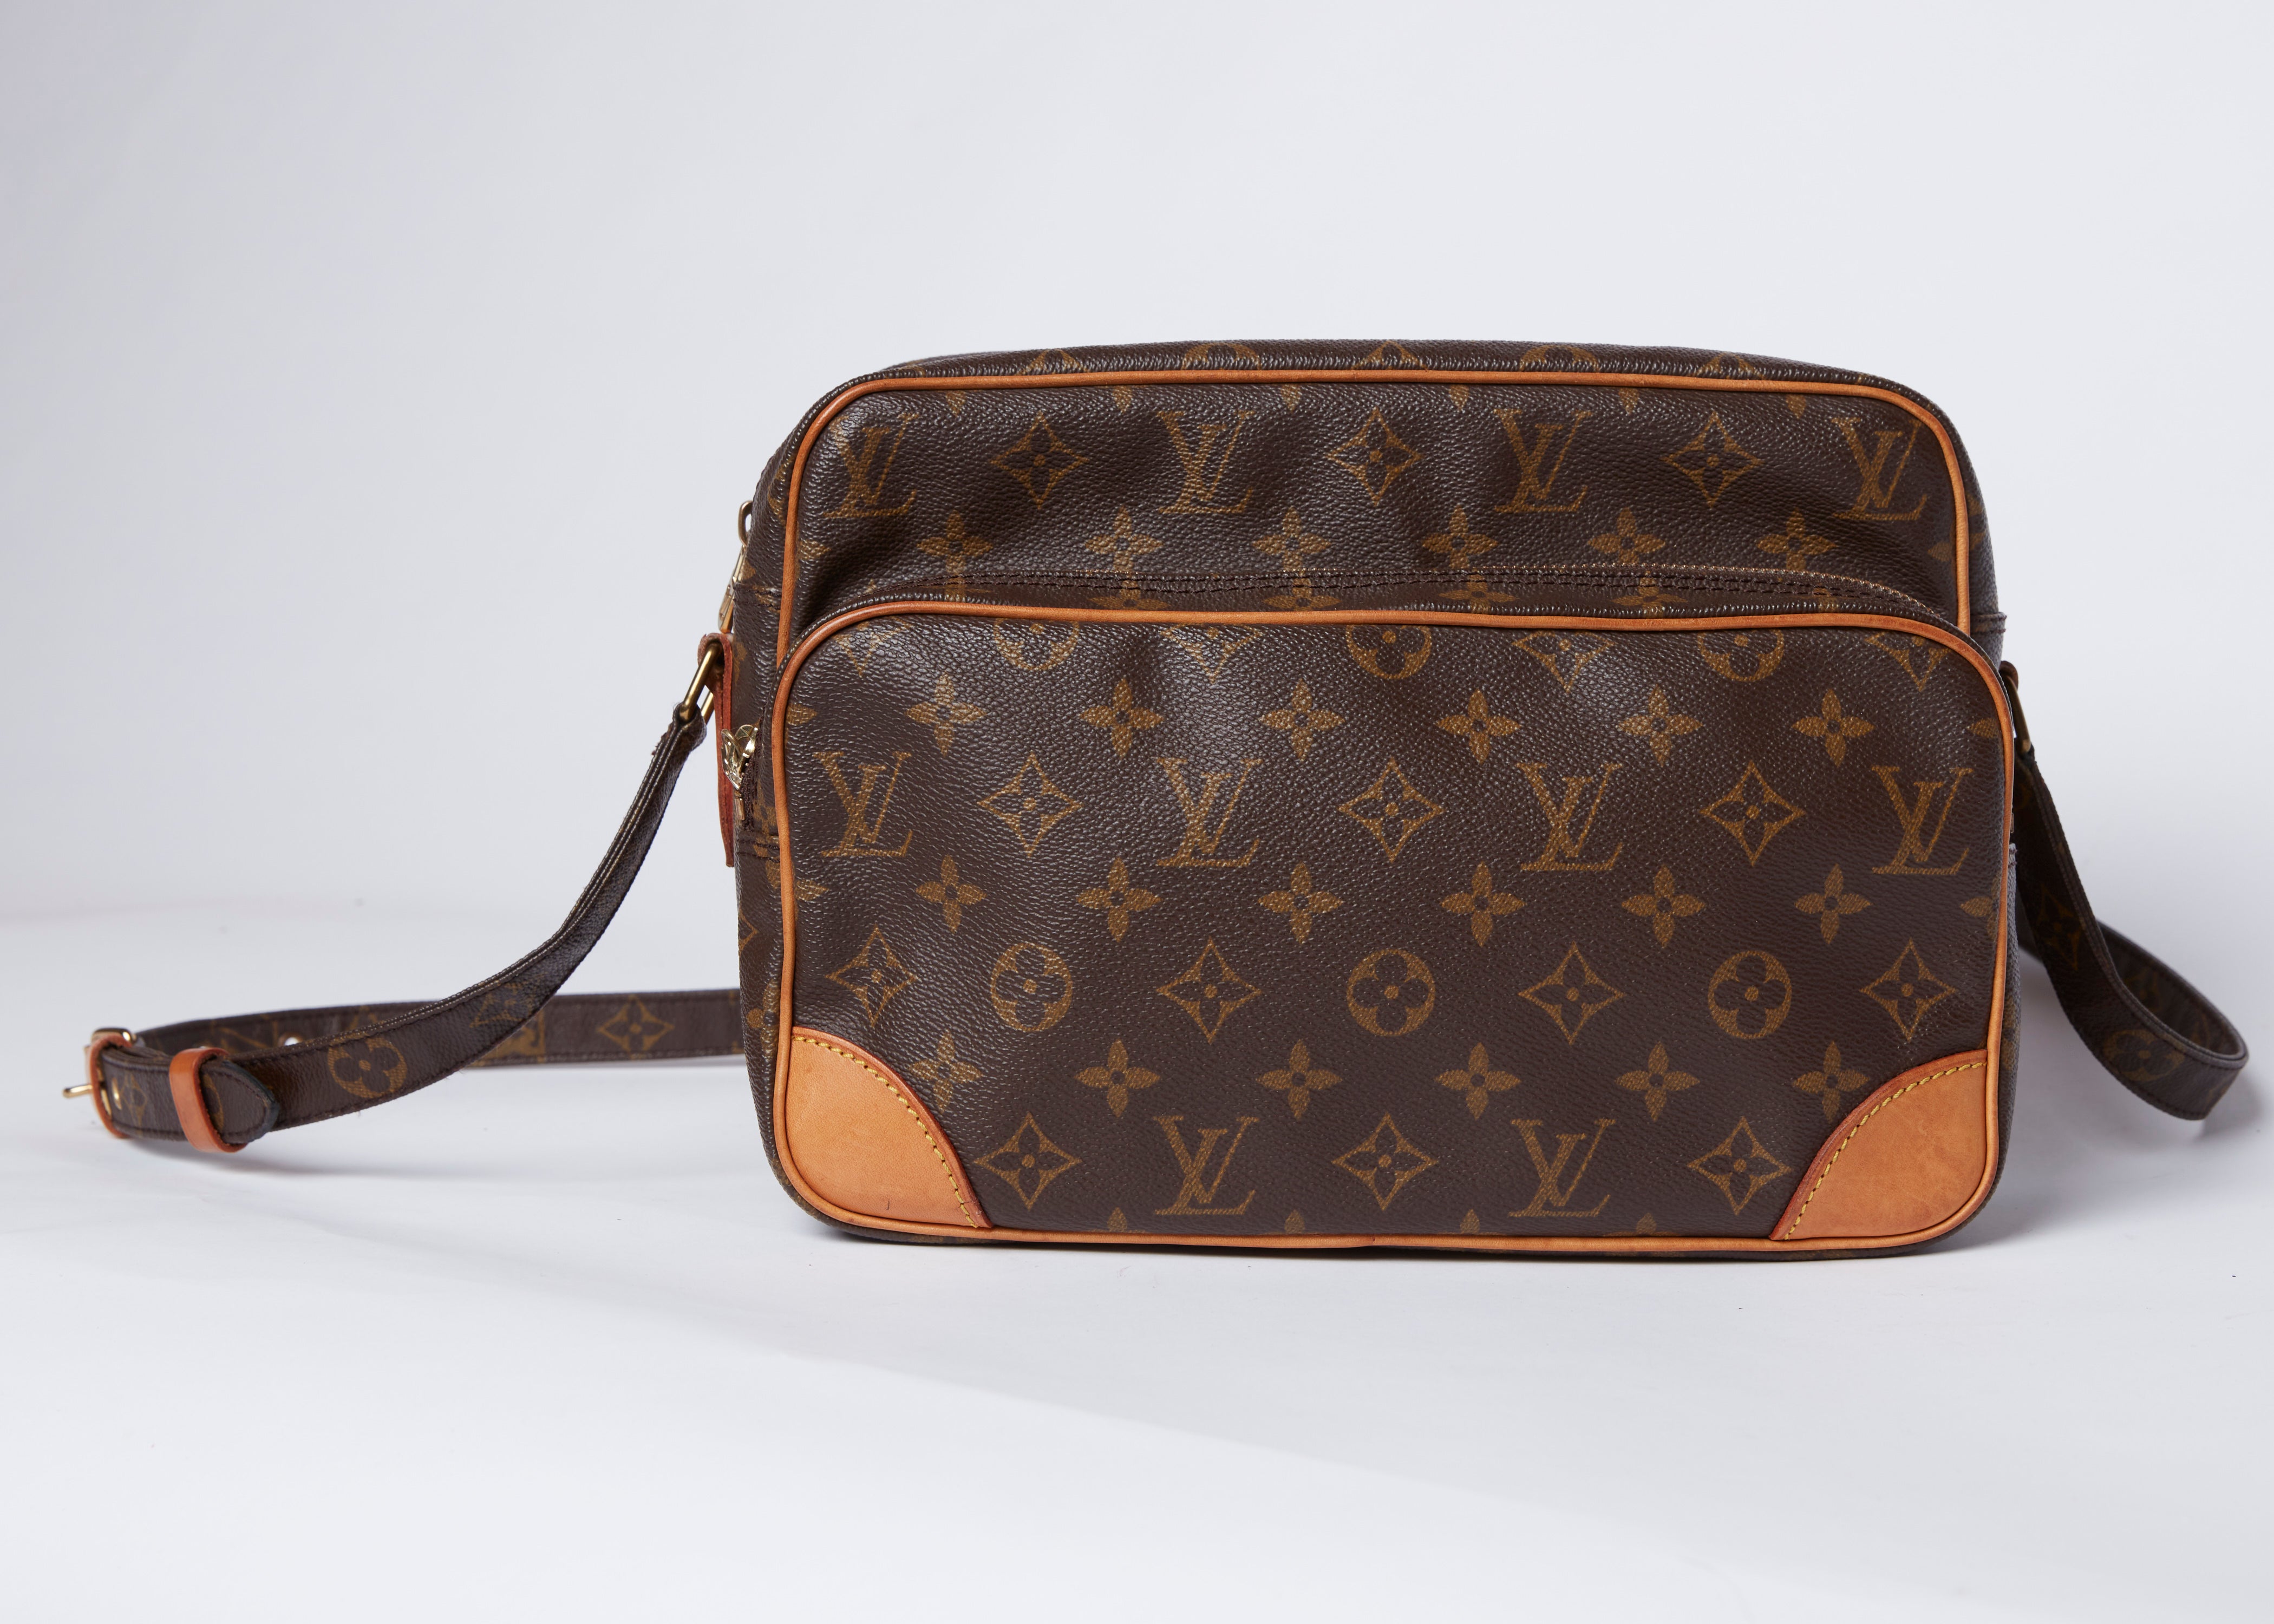 Louis Vuitton Nile crossbody bag 